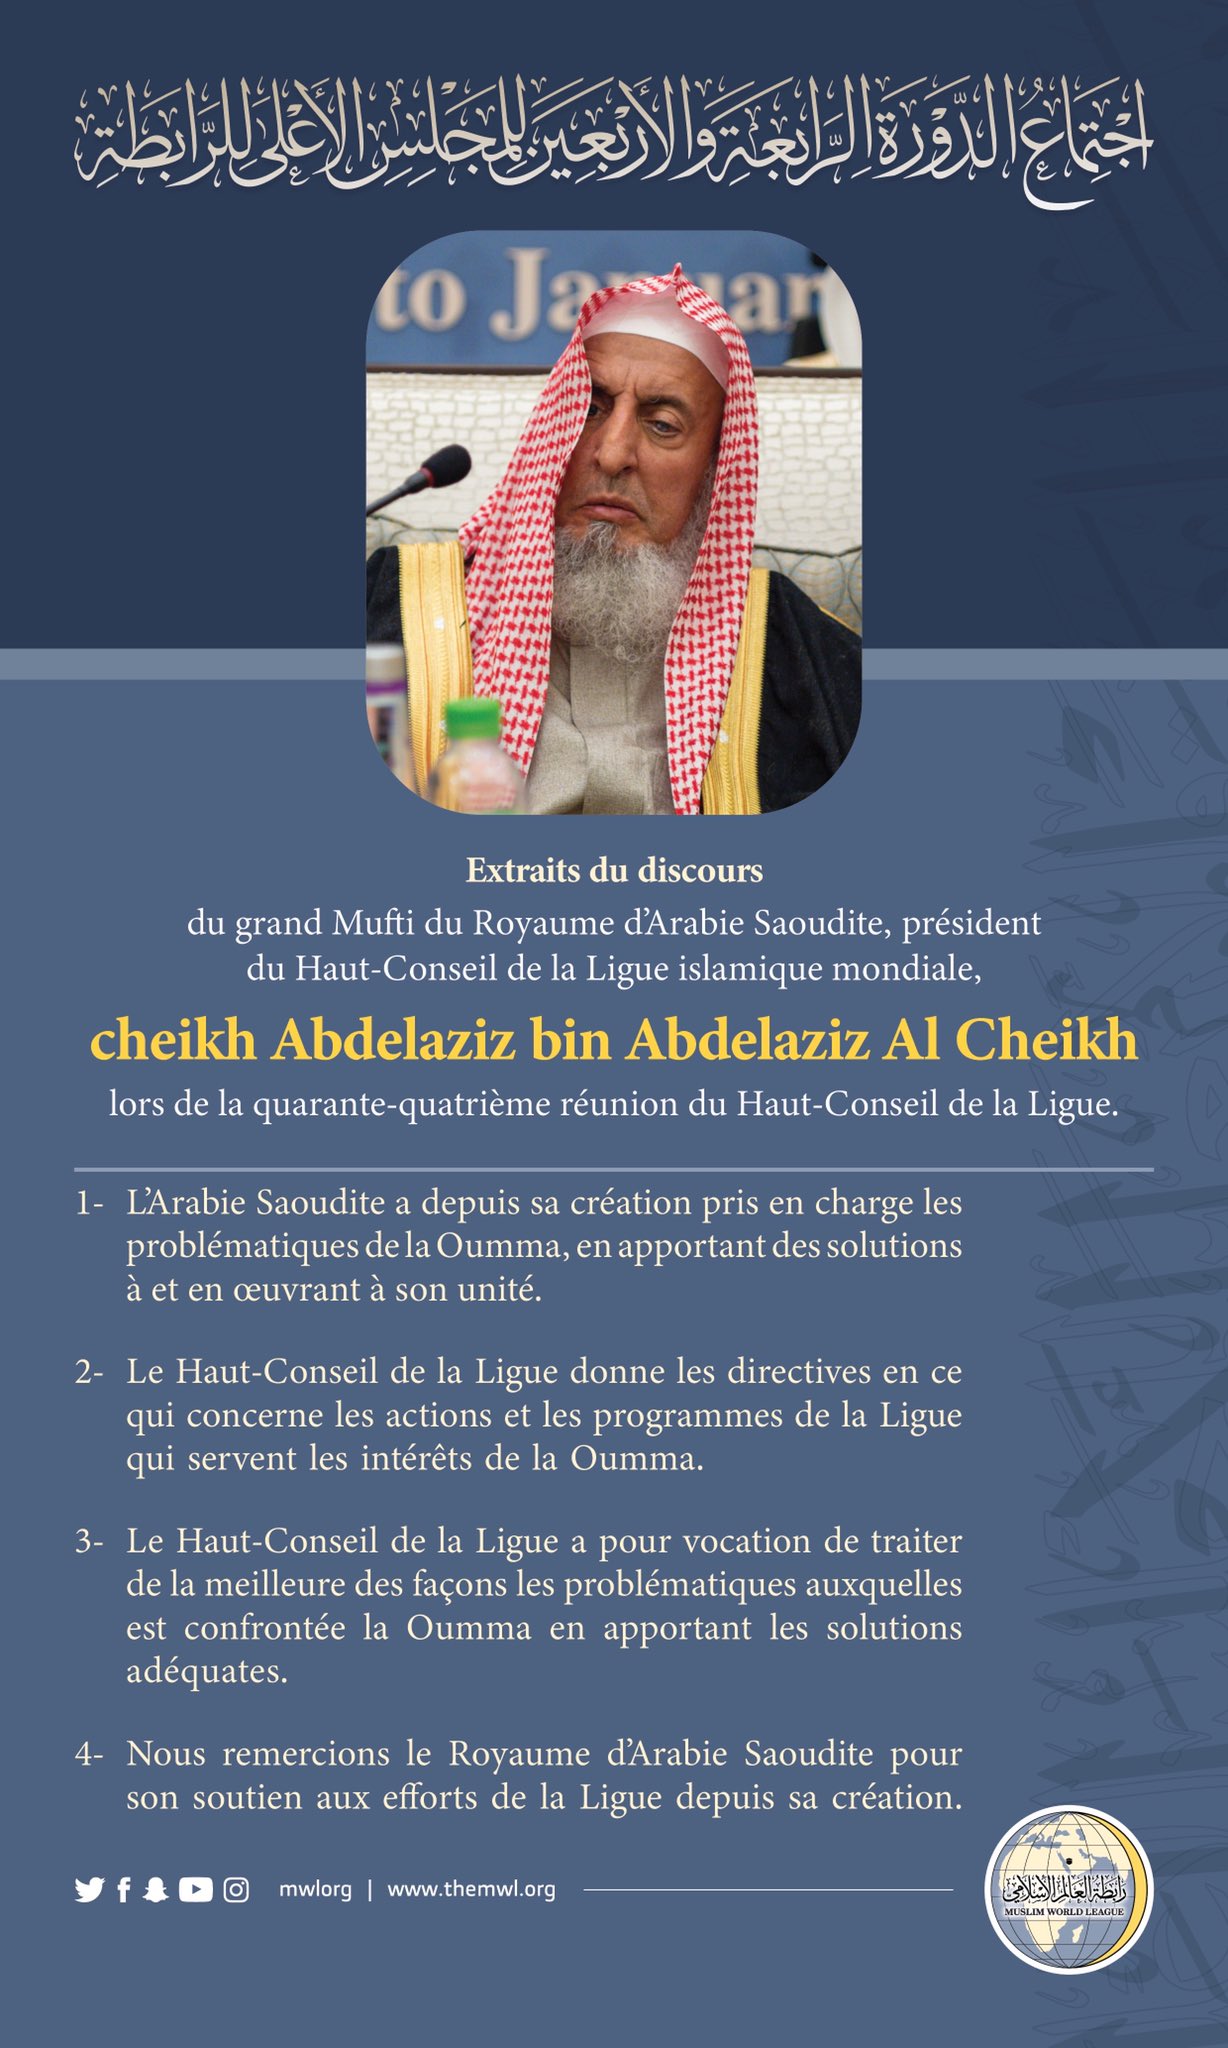 Extraits du discours de cheikh Abdelaziz Al Cheikh, grand Mufti du Royaume d’Arabie Saoudite lors des travaux du Haut-Conseil de la Ligue islamique mondiale : Savants Musulmans Mecque